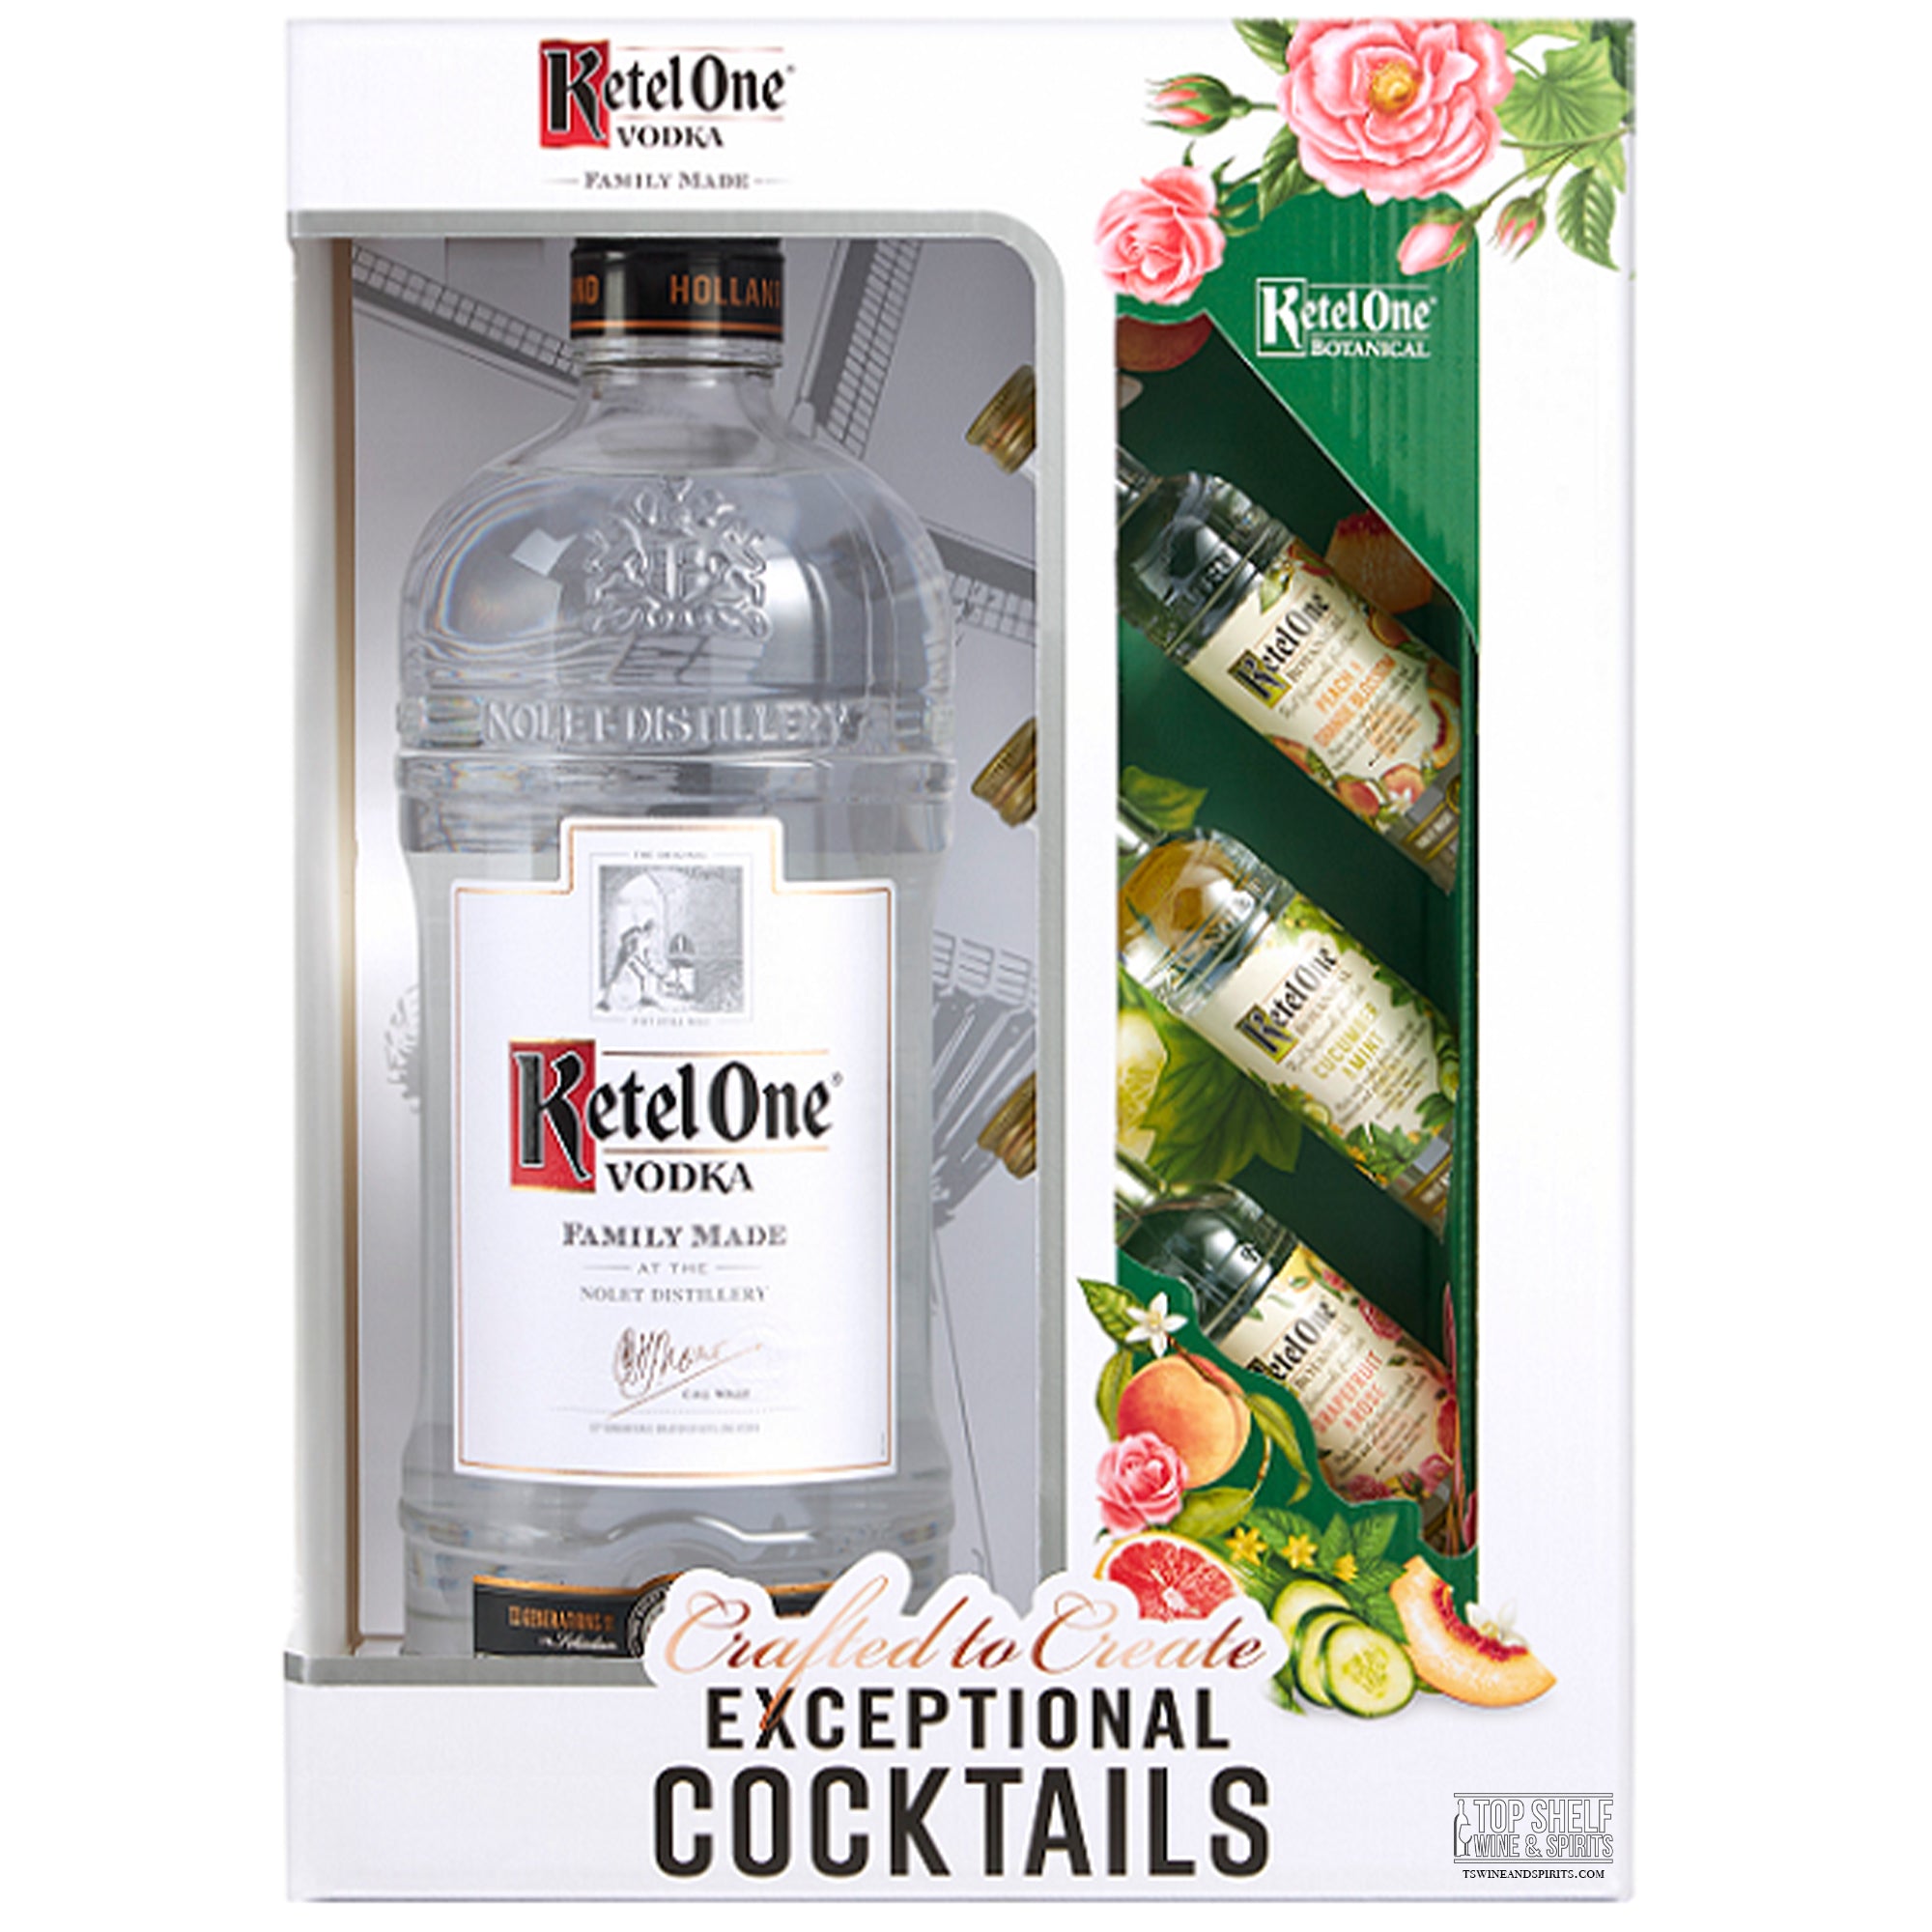 Ketel One Vodka 1.75 Liter with 3 Botanicals 50ml Gift Set